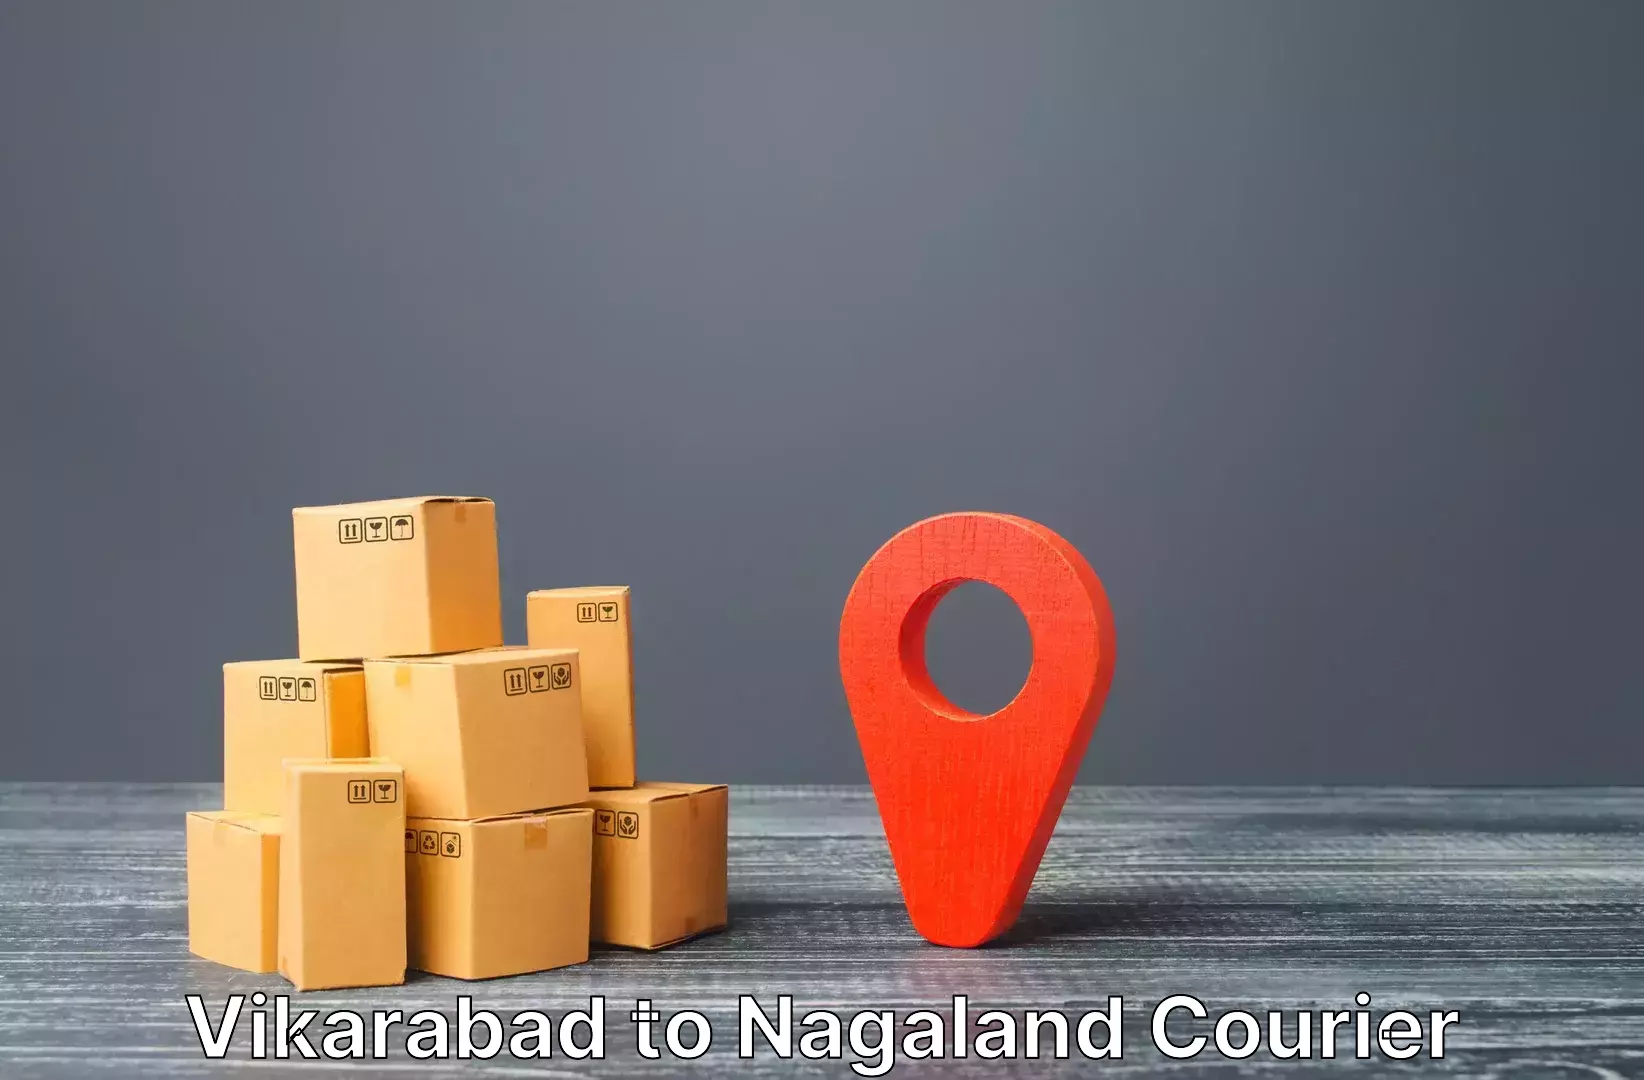 Luggage delivery providers Vikarabad to Kohima